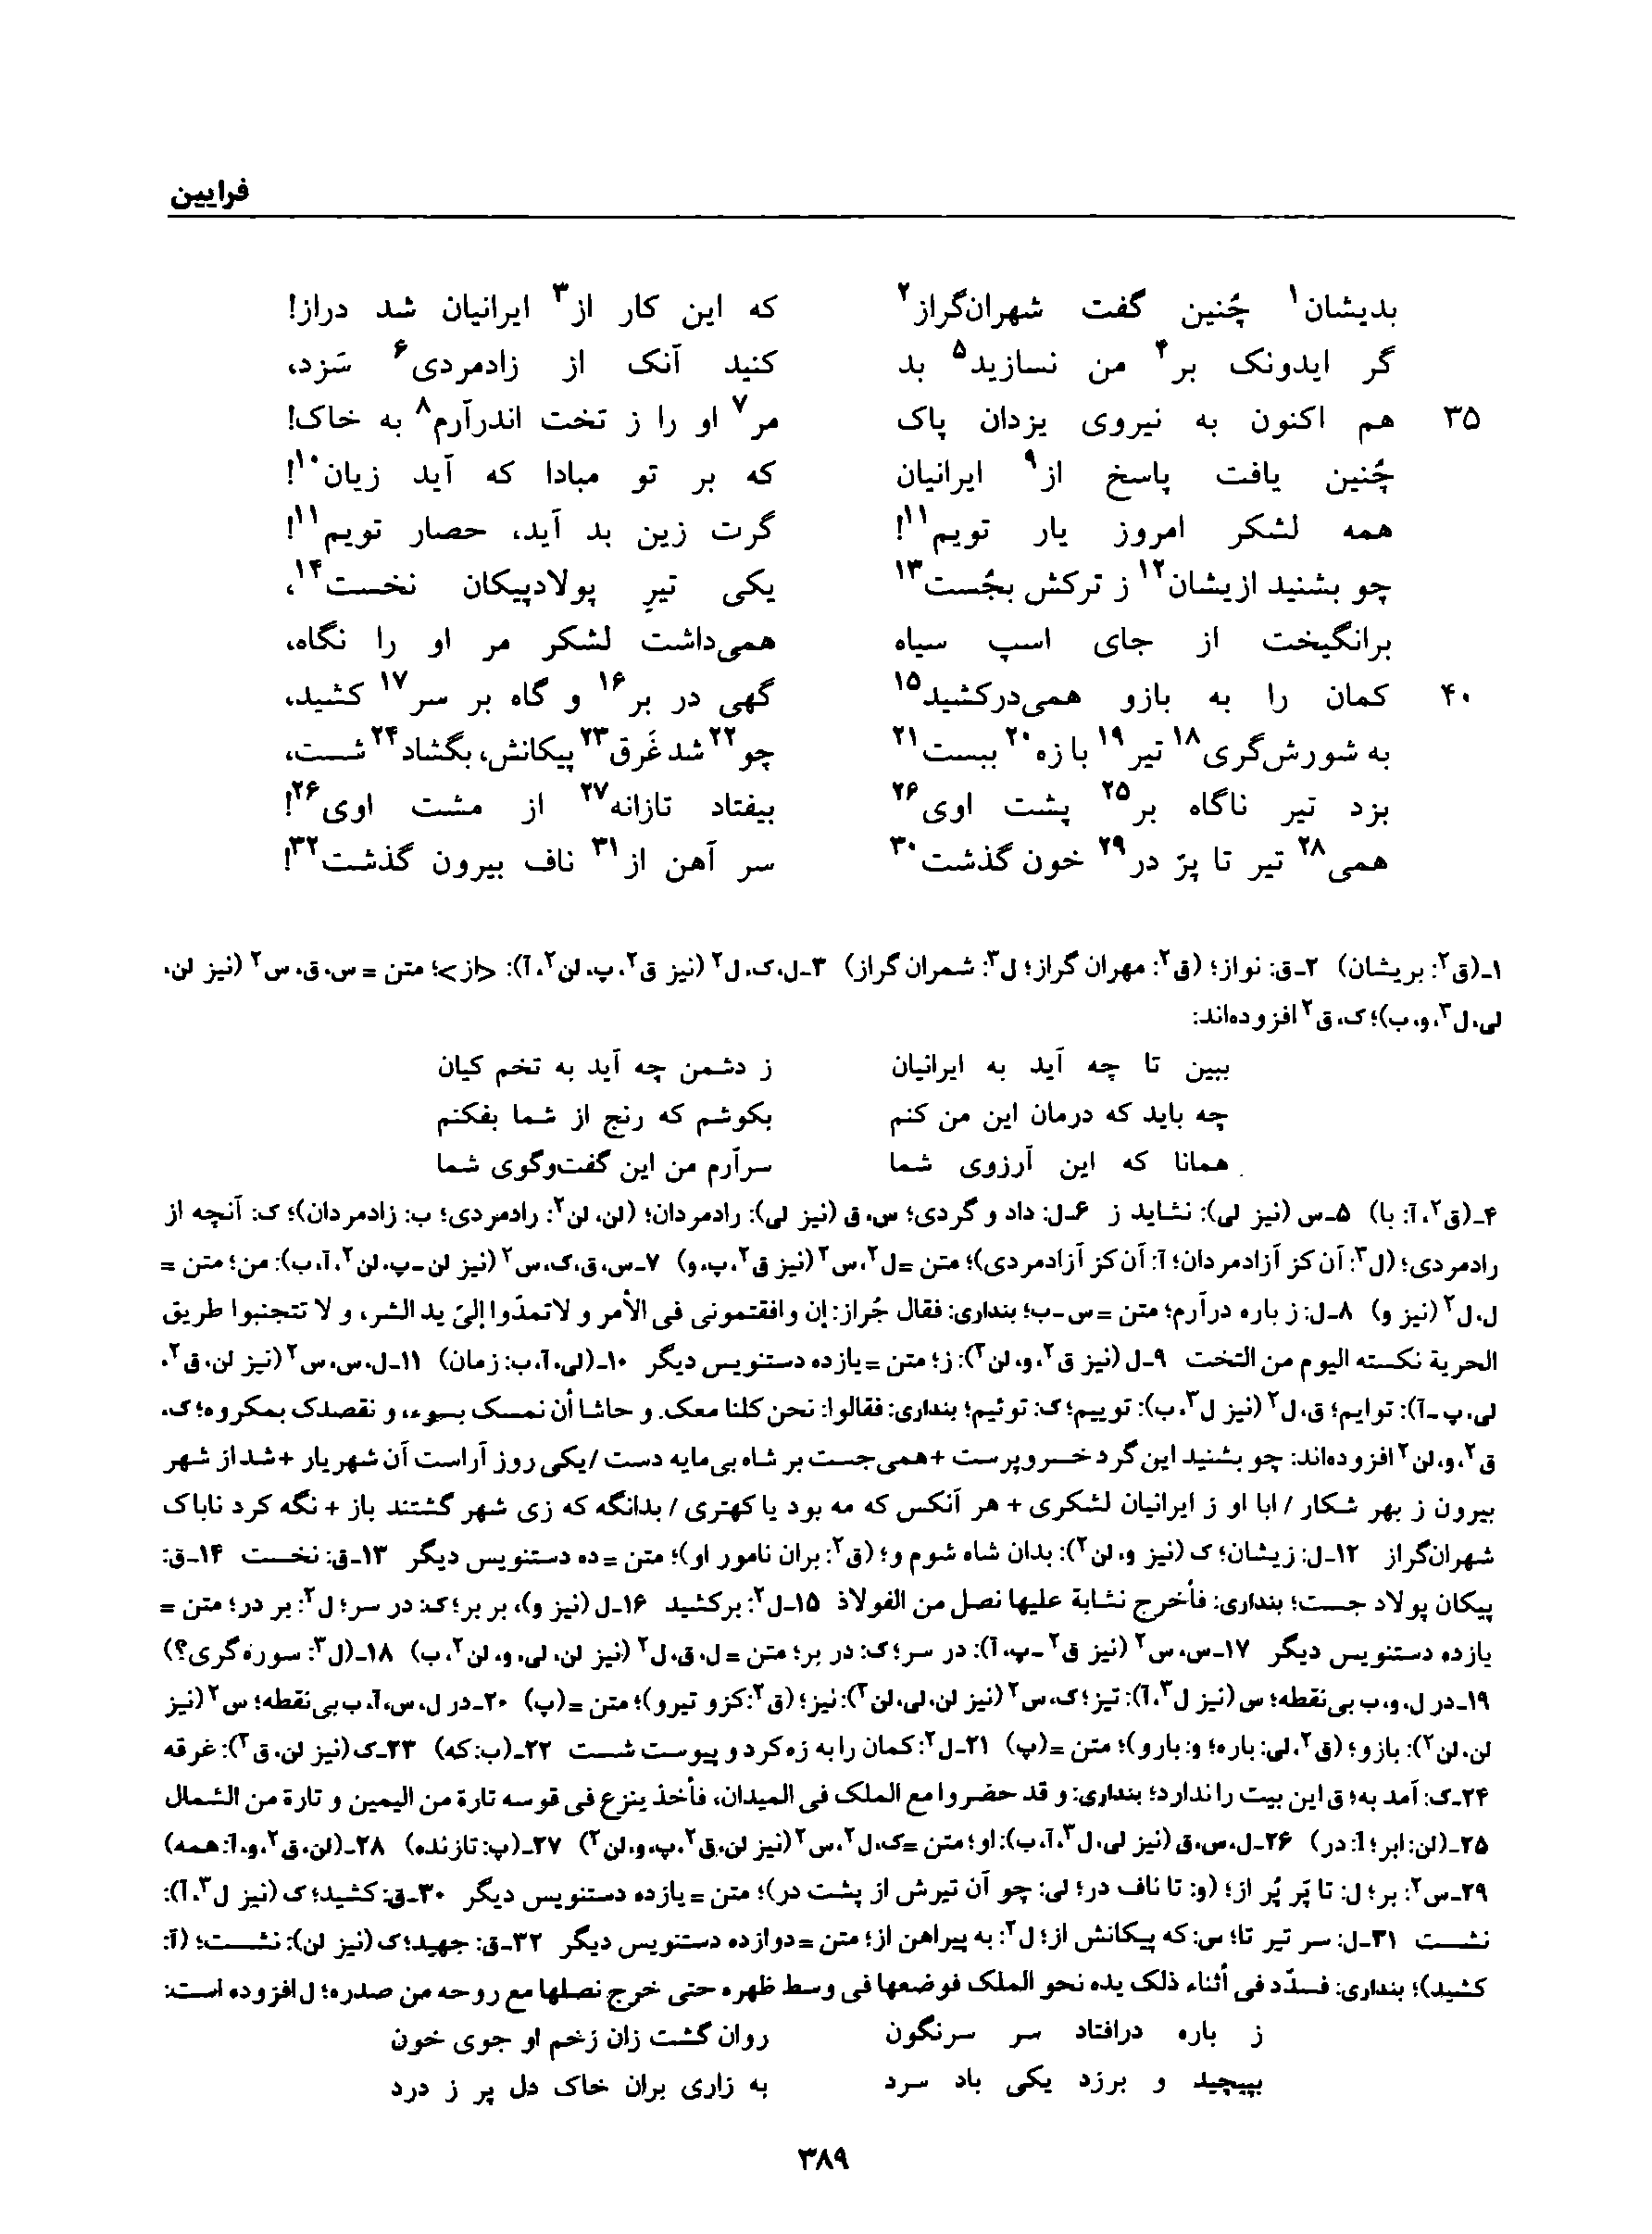 vol. 8, p. 389